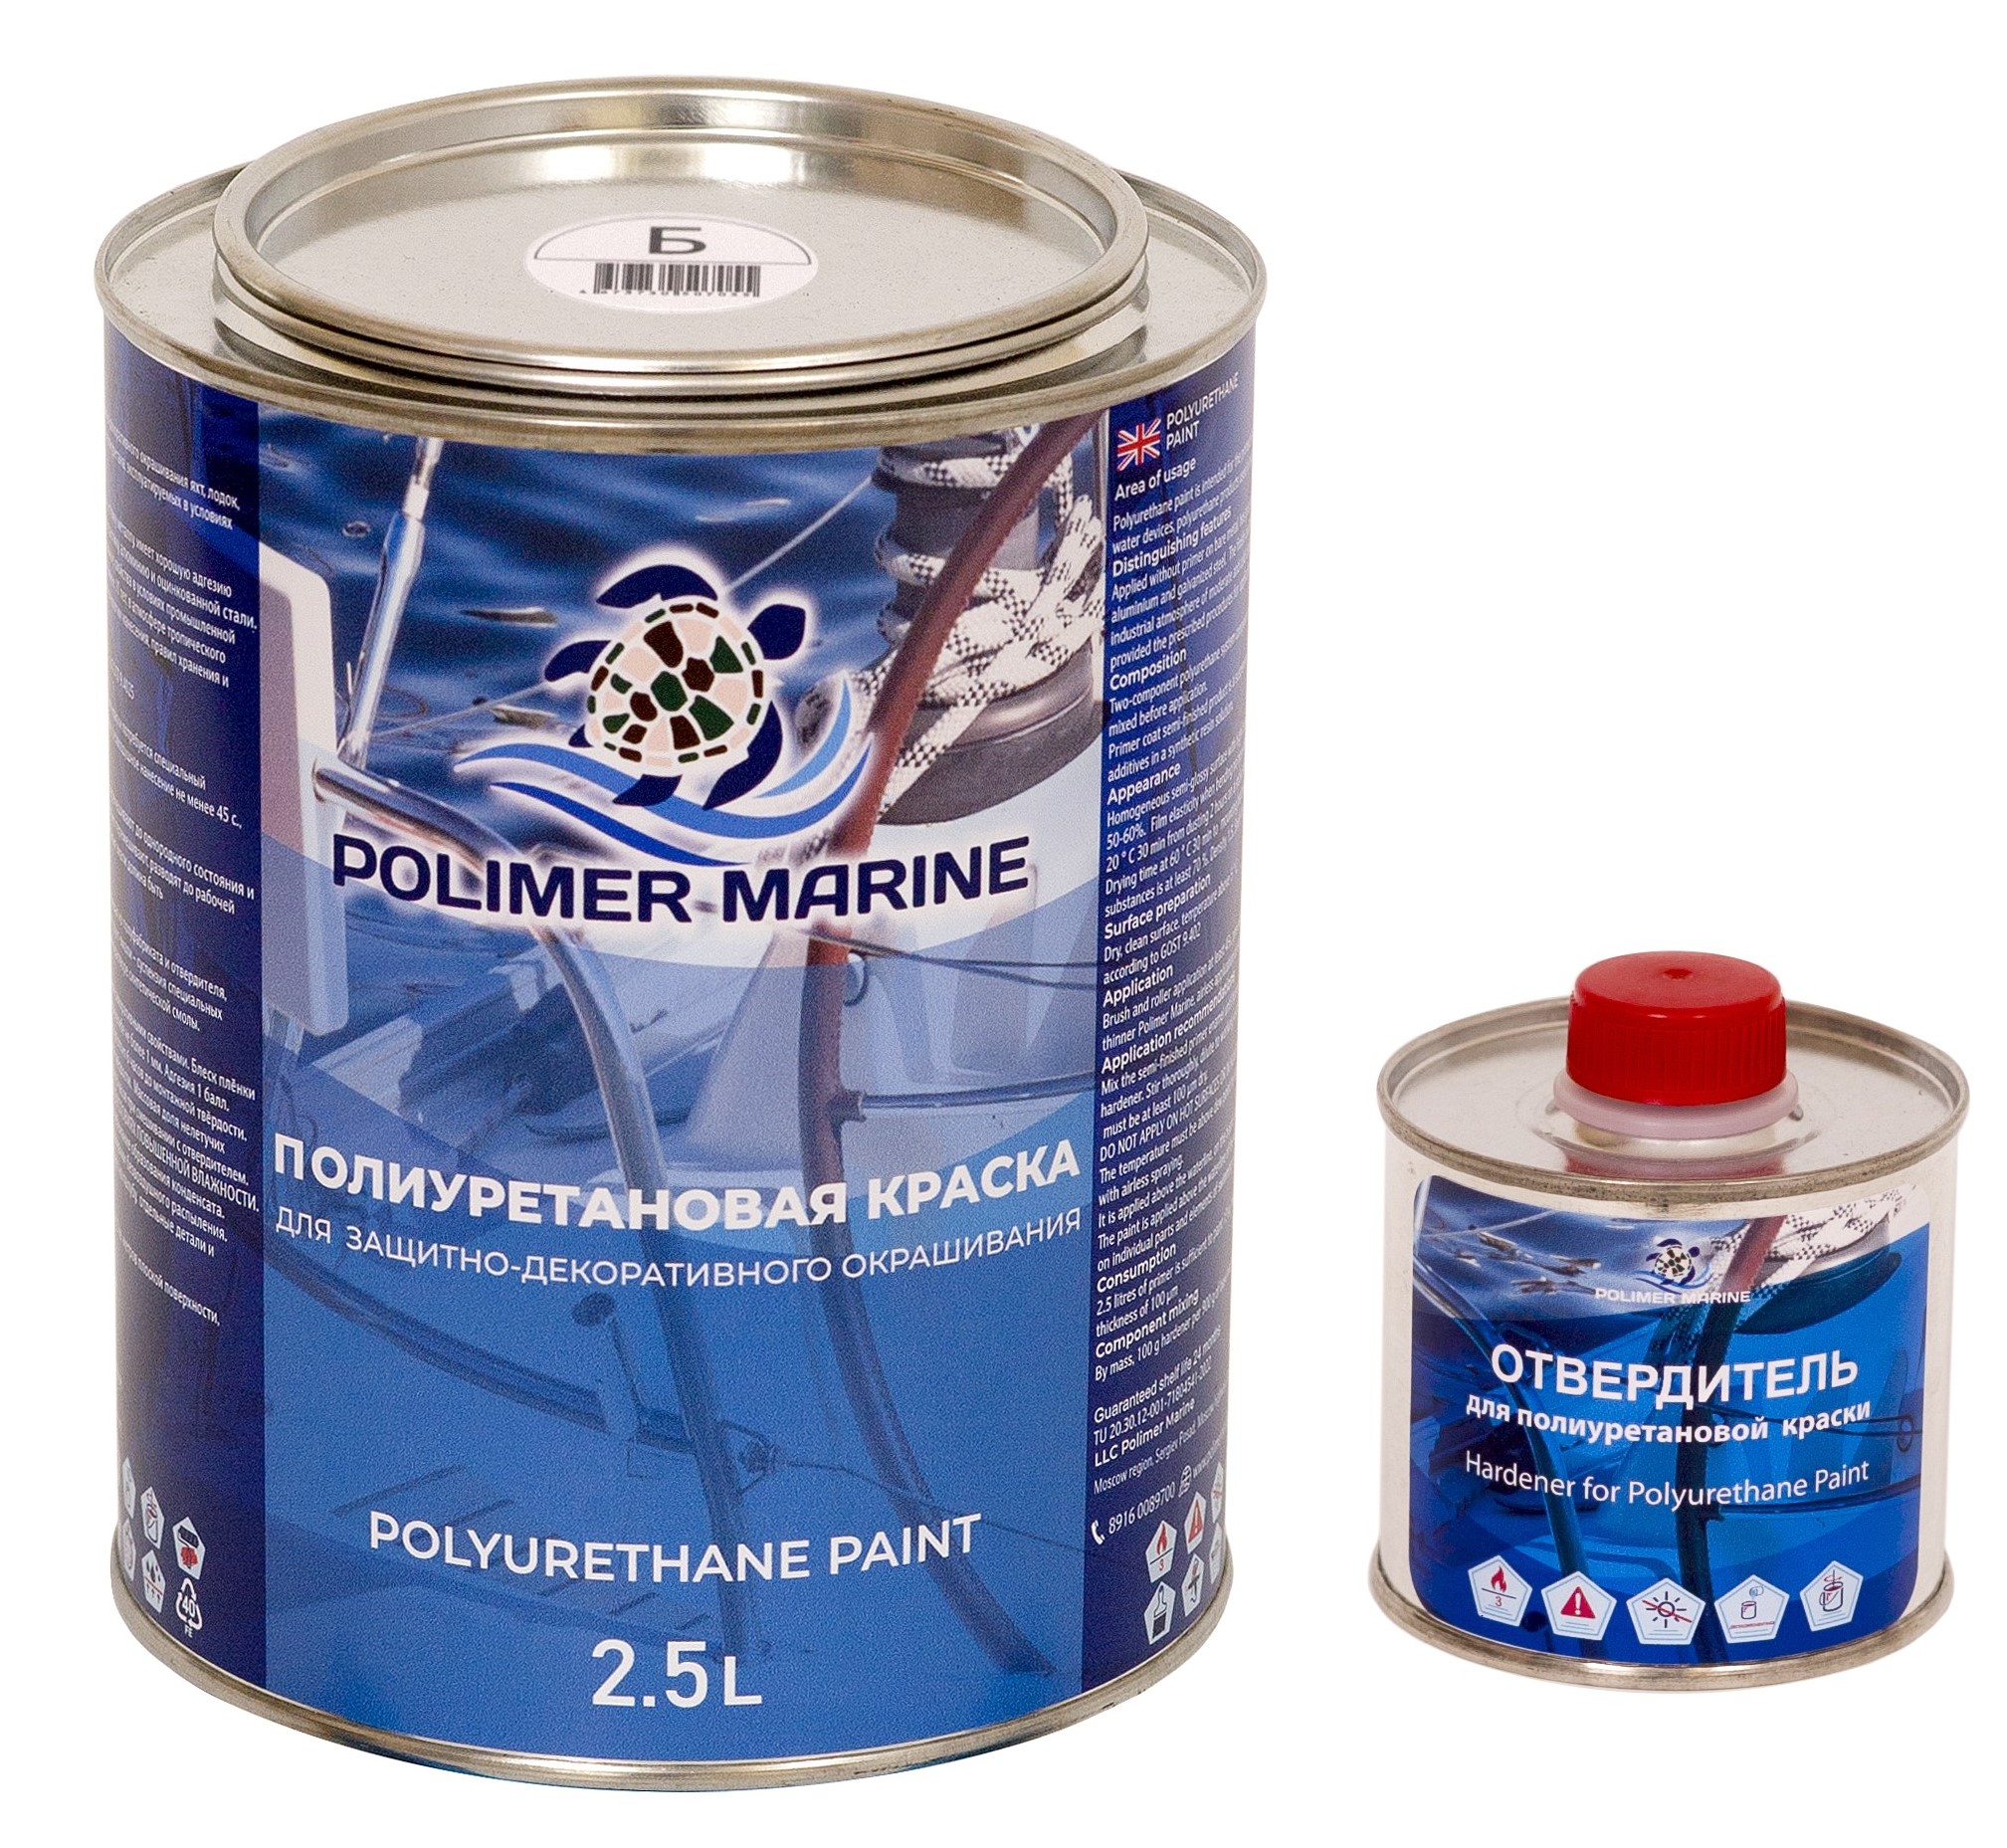 Полиуретановая краска Polimer Marine КП Кп25б белая 2.5 л двухкомпонентная 2К